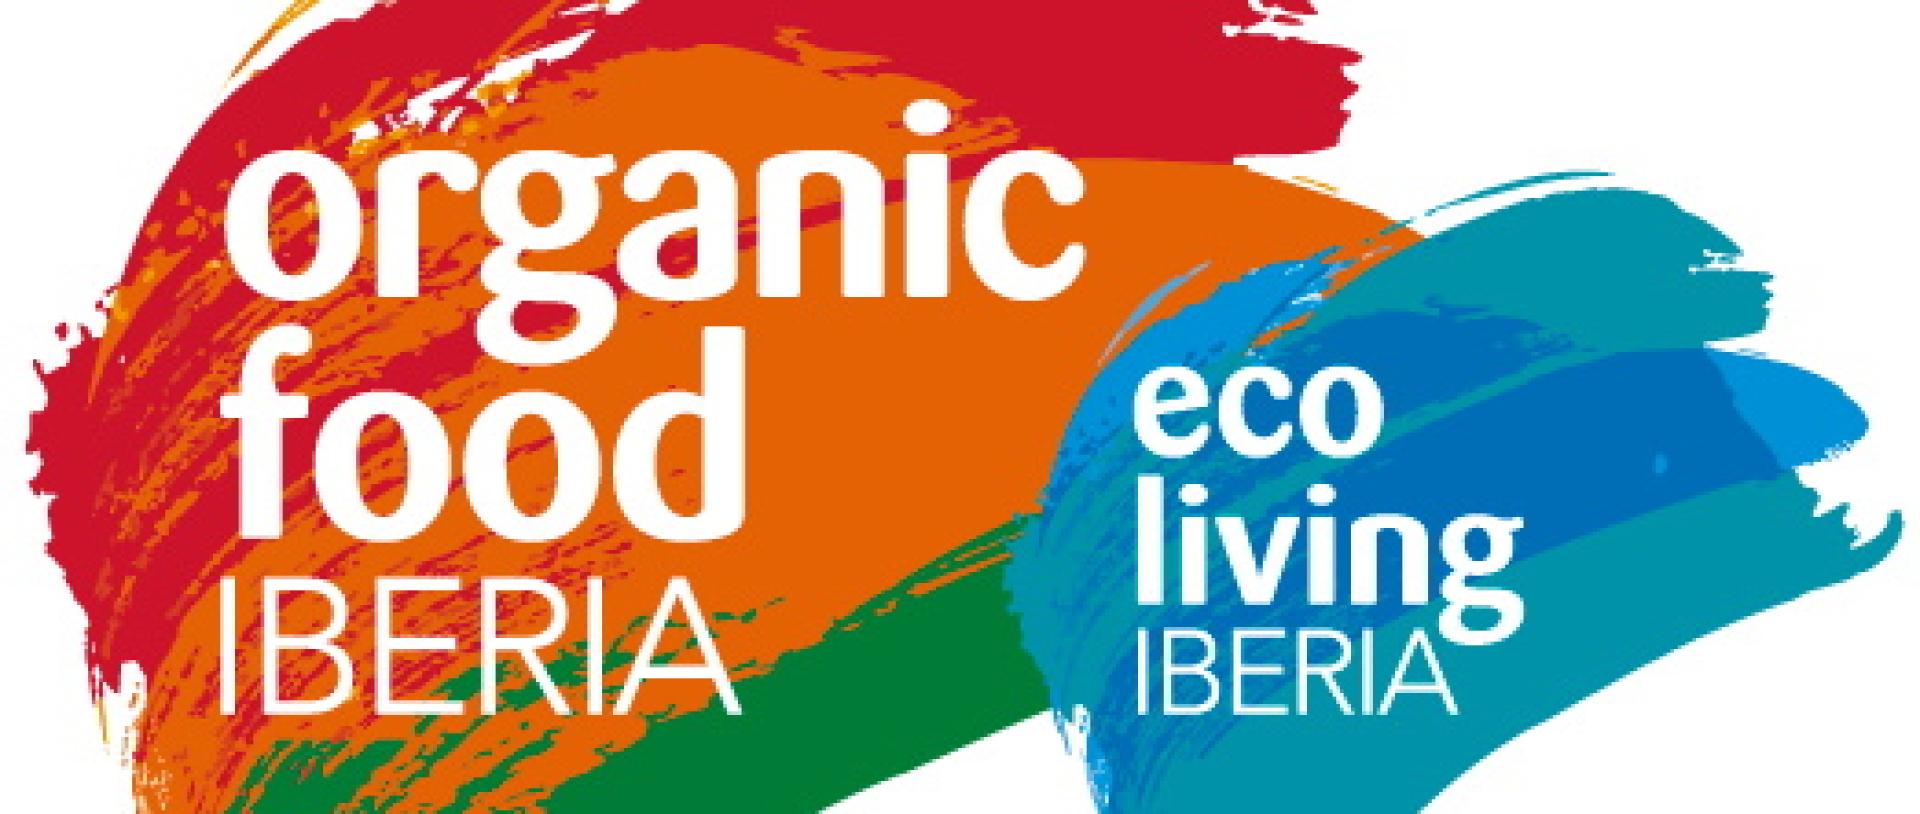 Nabór uzupełniający przedsiębiorstw  na stoisko regionalne Województwa Wielkopolskiego na targi wpisane w obszar Inteligentnej Specjalizacji: Biosurowce i żywność dla świadomych konsumentów - zobacz więcej